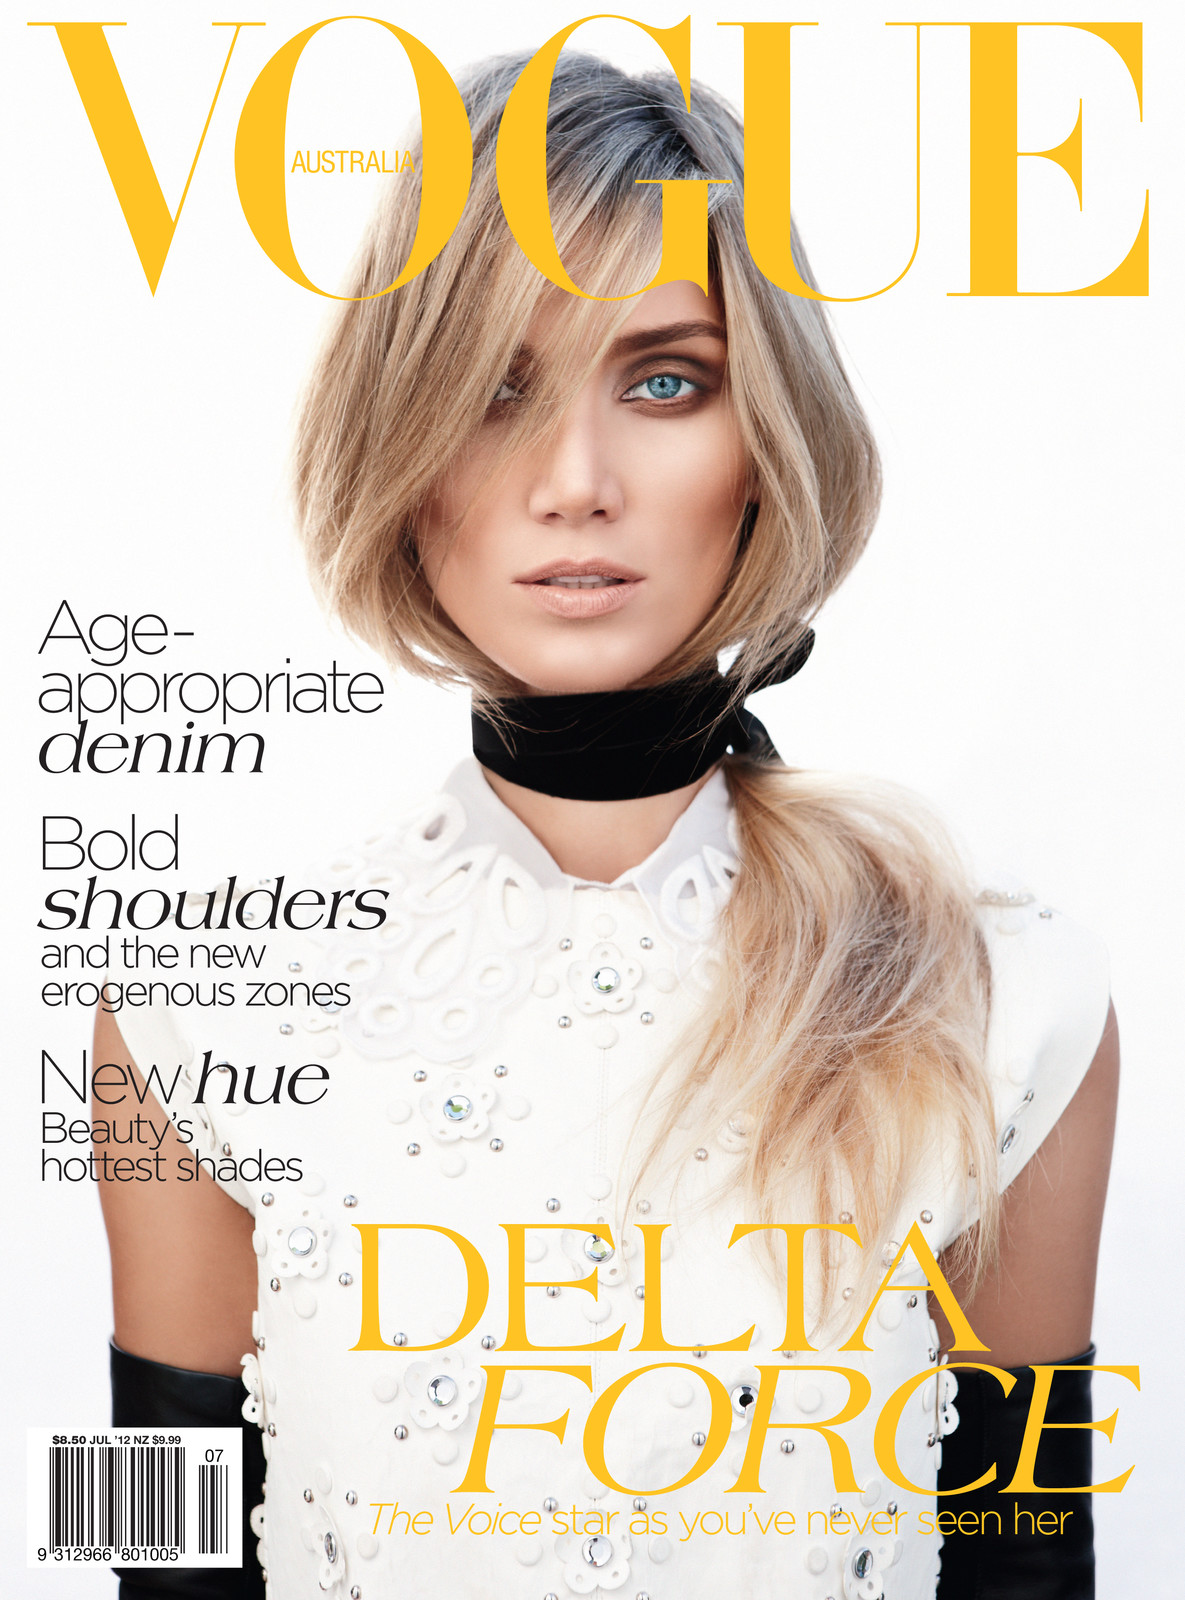 Delta Goodrem - Vogue Australia